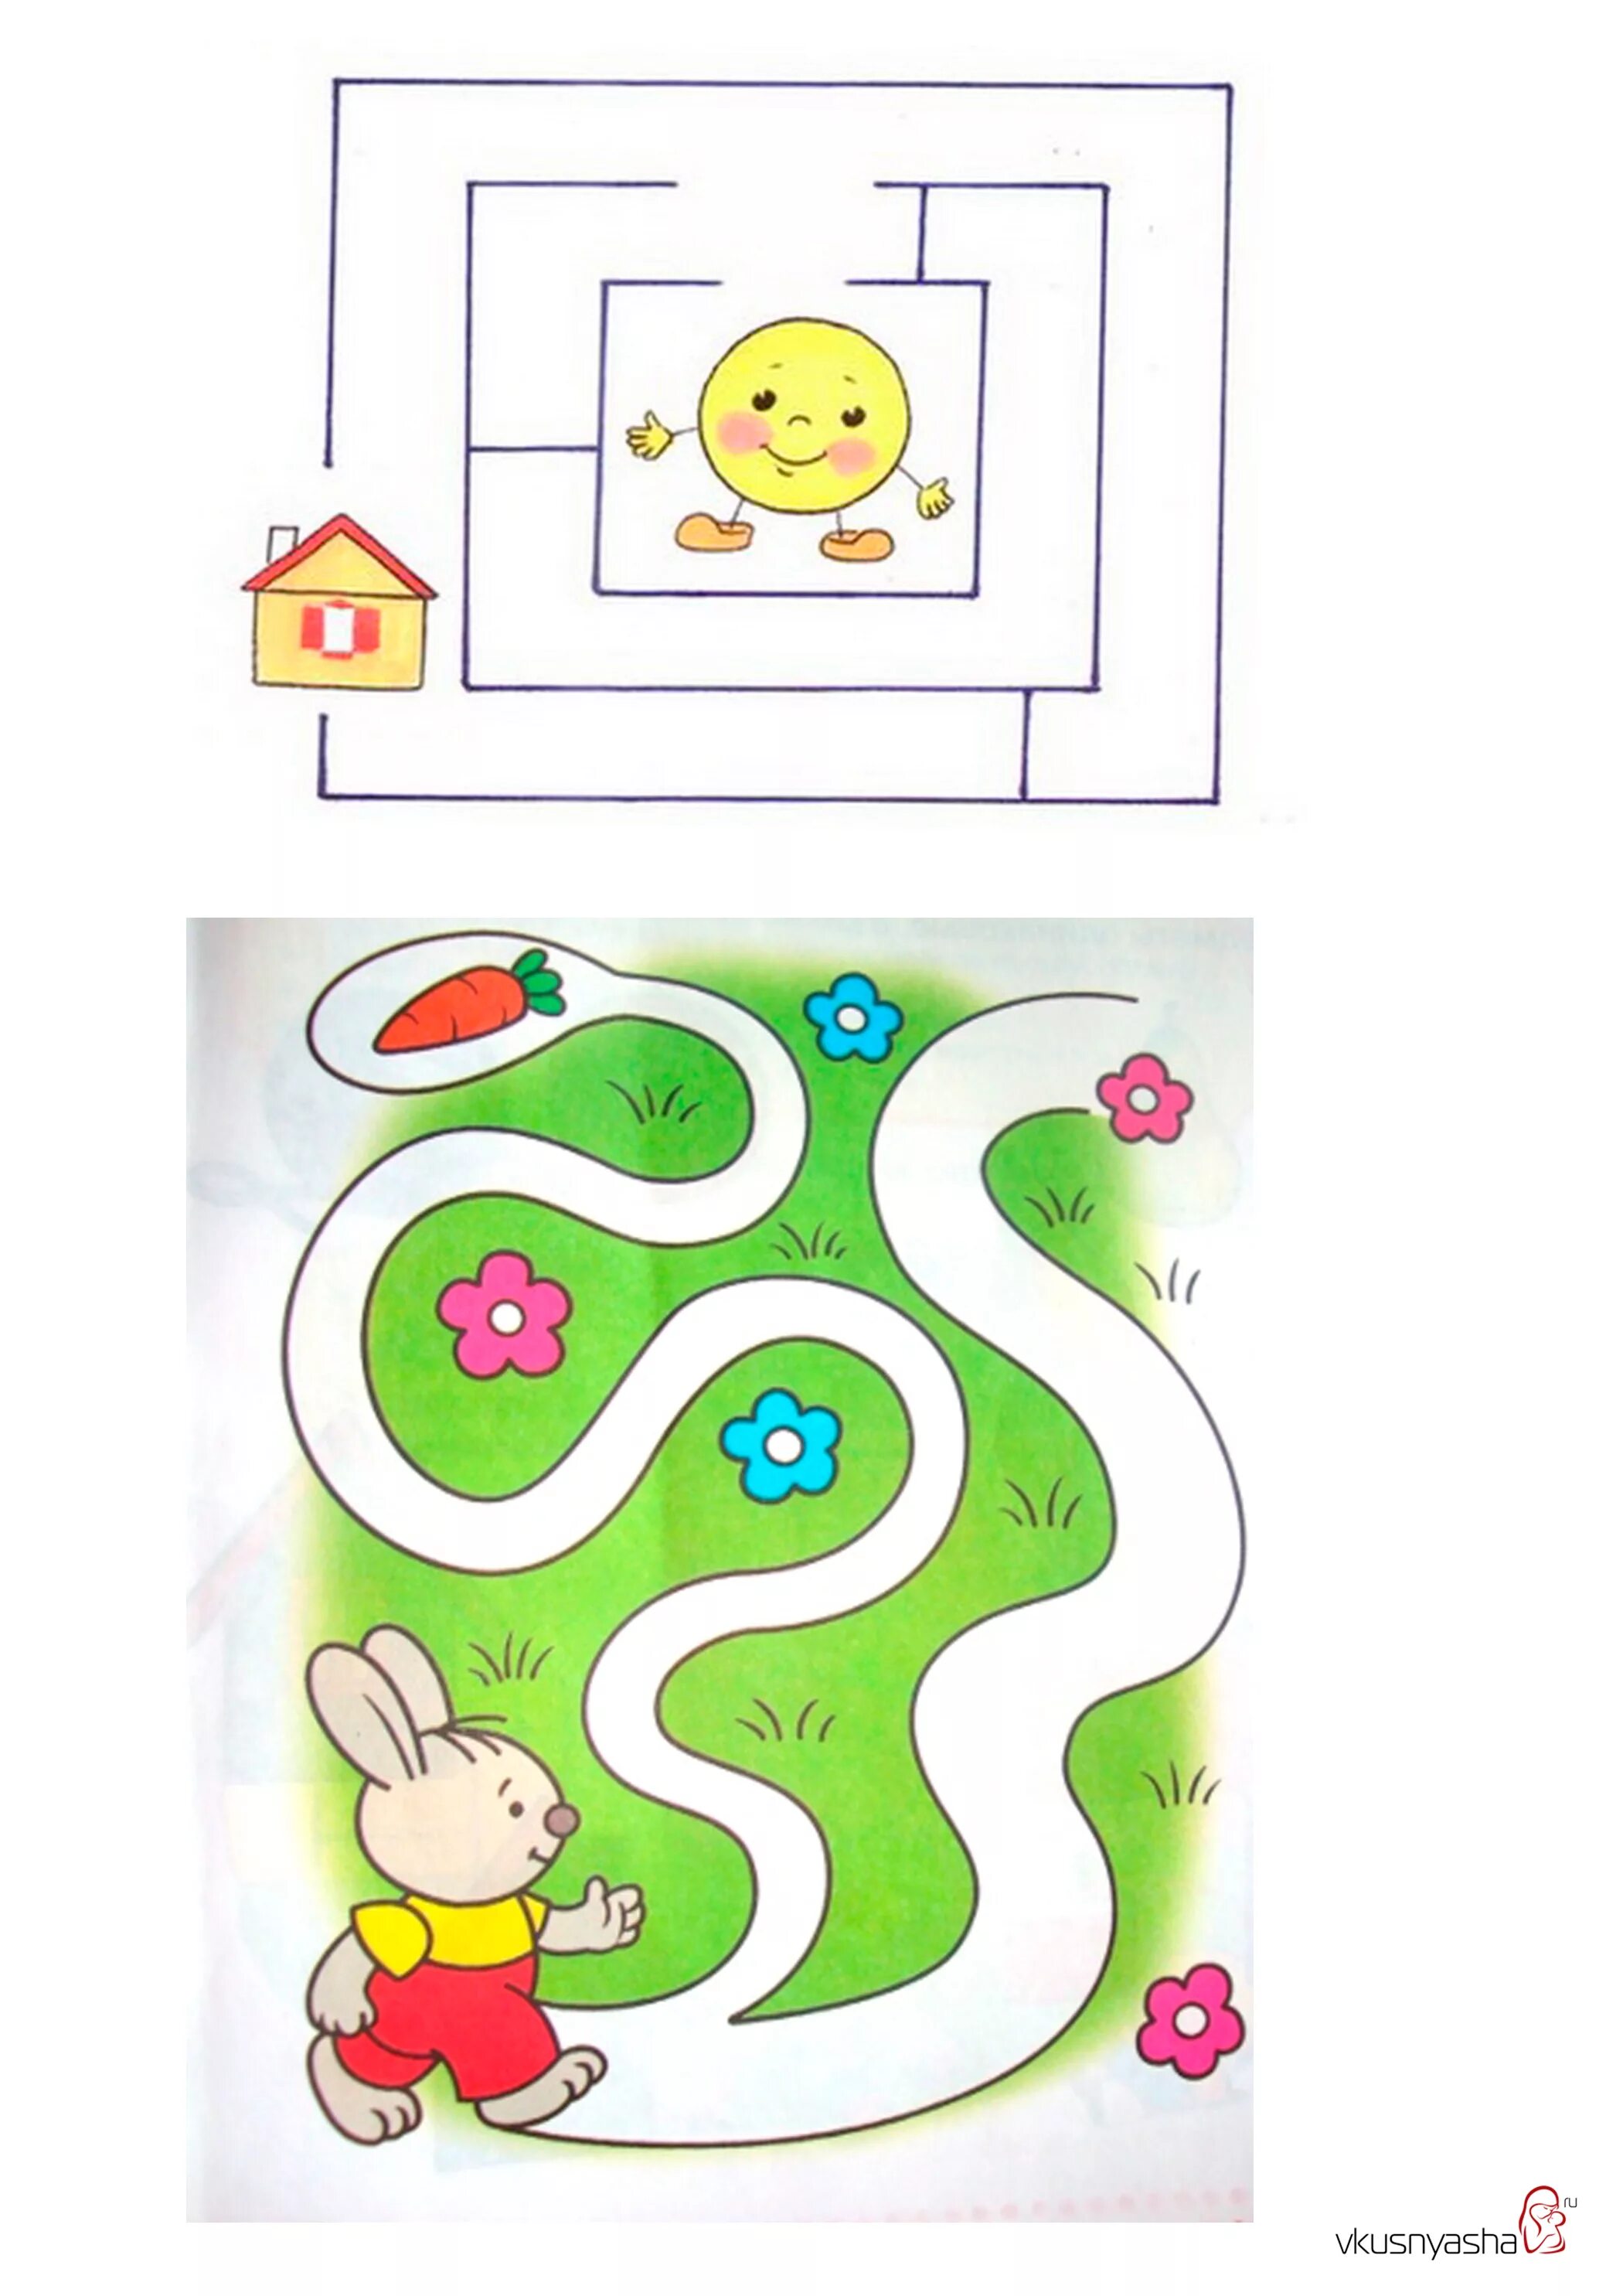 Лабиринты 2-3 года. Игра для детей Лабиринт 3 - 5 лет. Развивашки для детей 3-4 года Лабиринт. Игра Лабиринт для детей 2-3 лет.